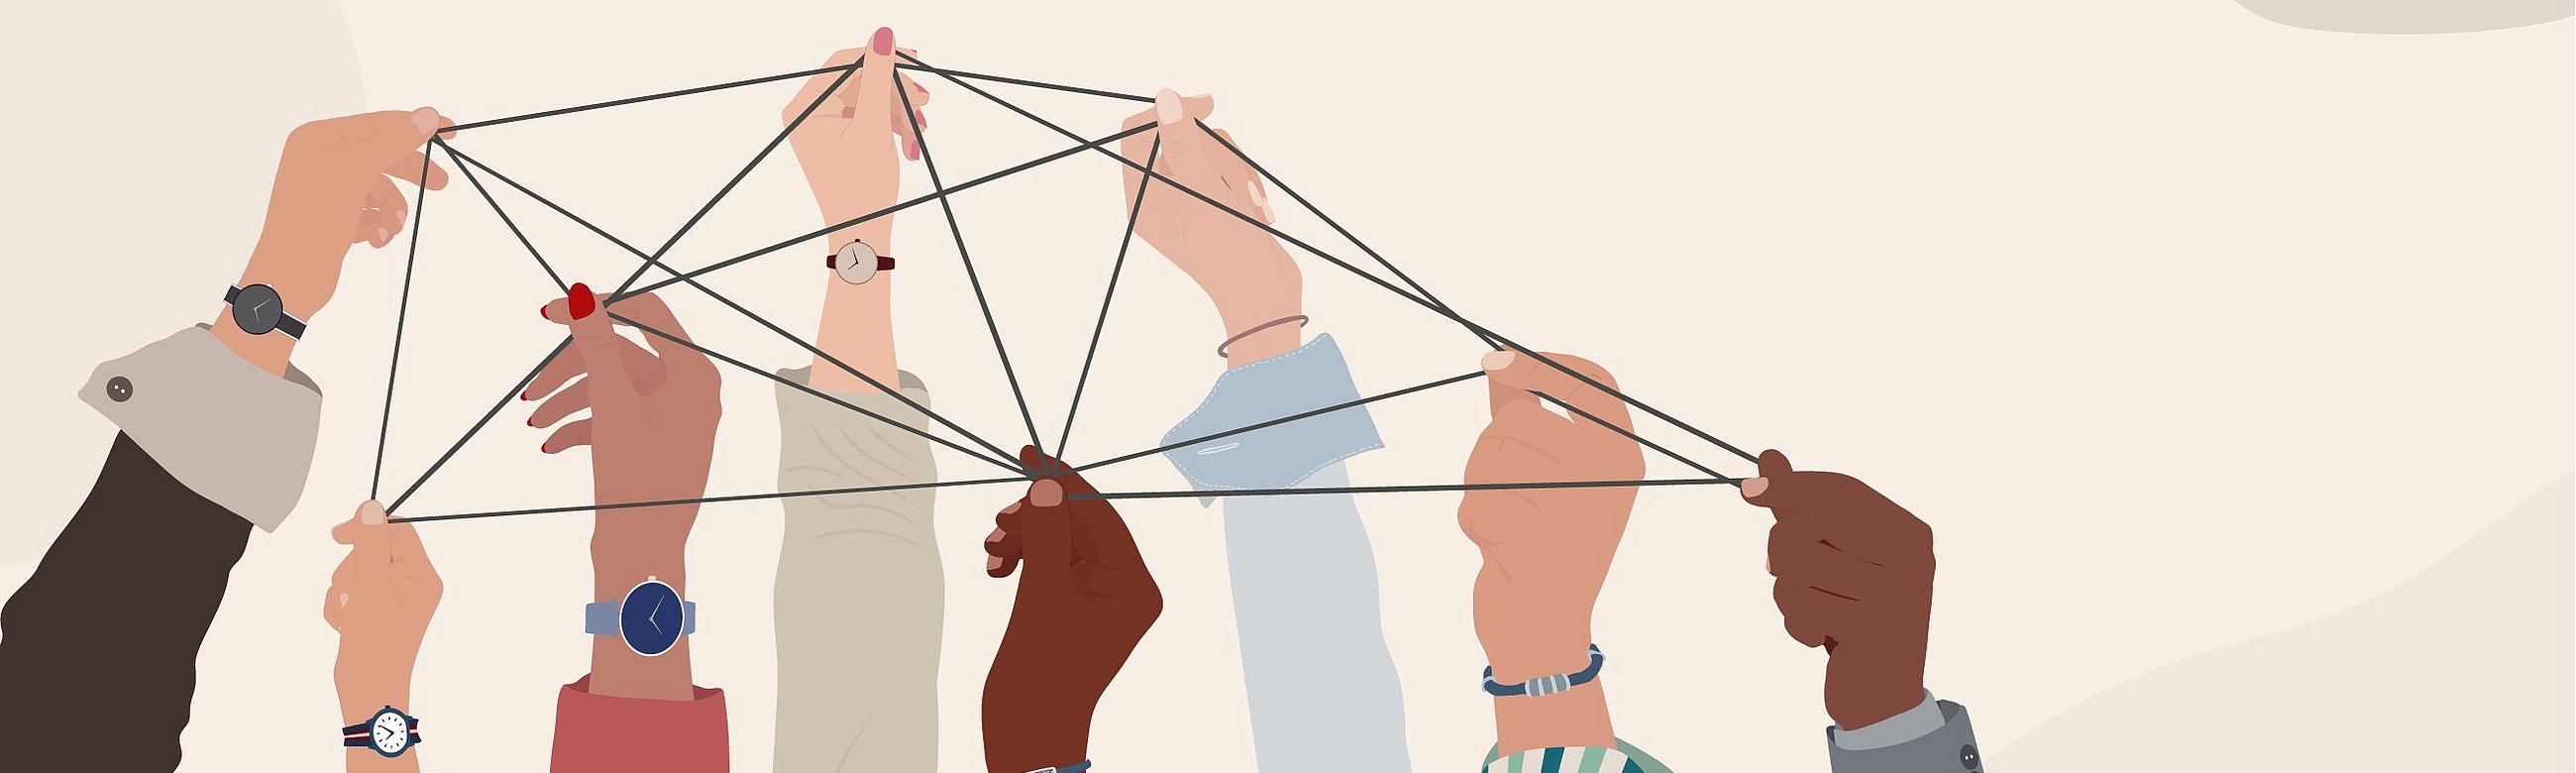 Illustration von Händen, die gemeinsam ein Netz spannen